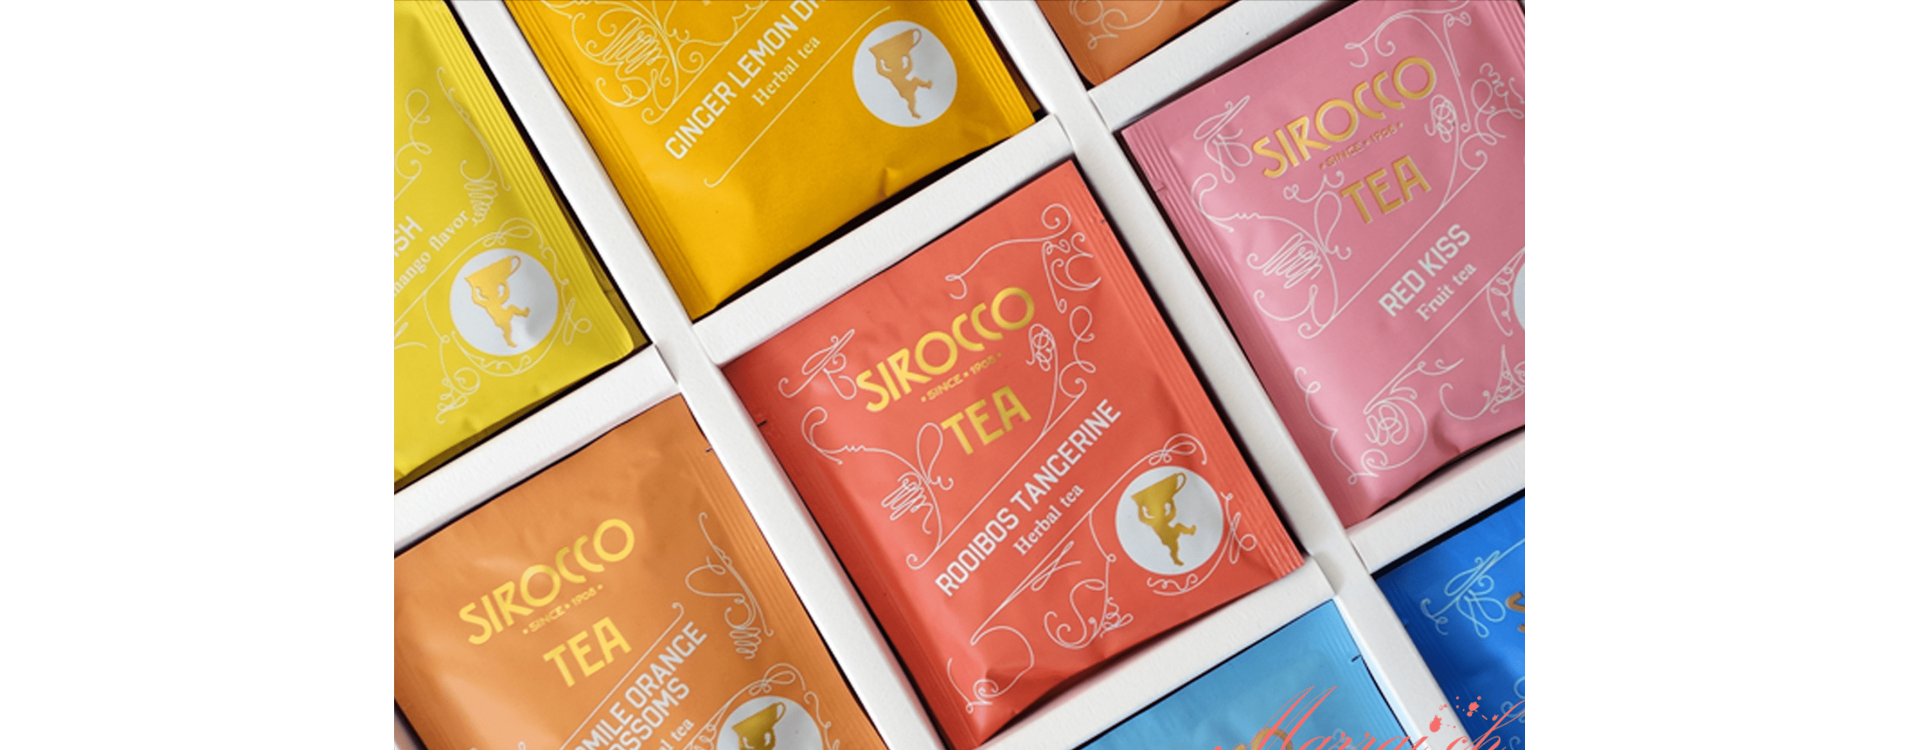 Sirocco Tee – vollmundiger Geschmack aus fernen Ländern | Kanela